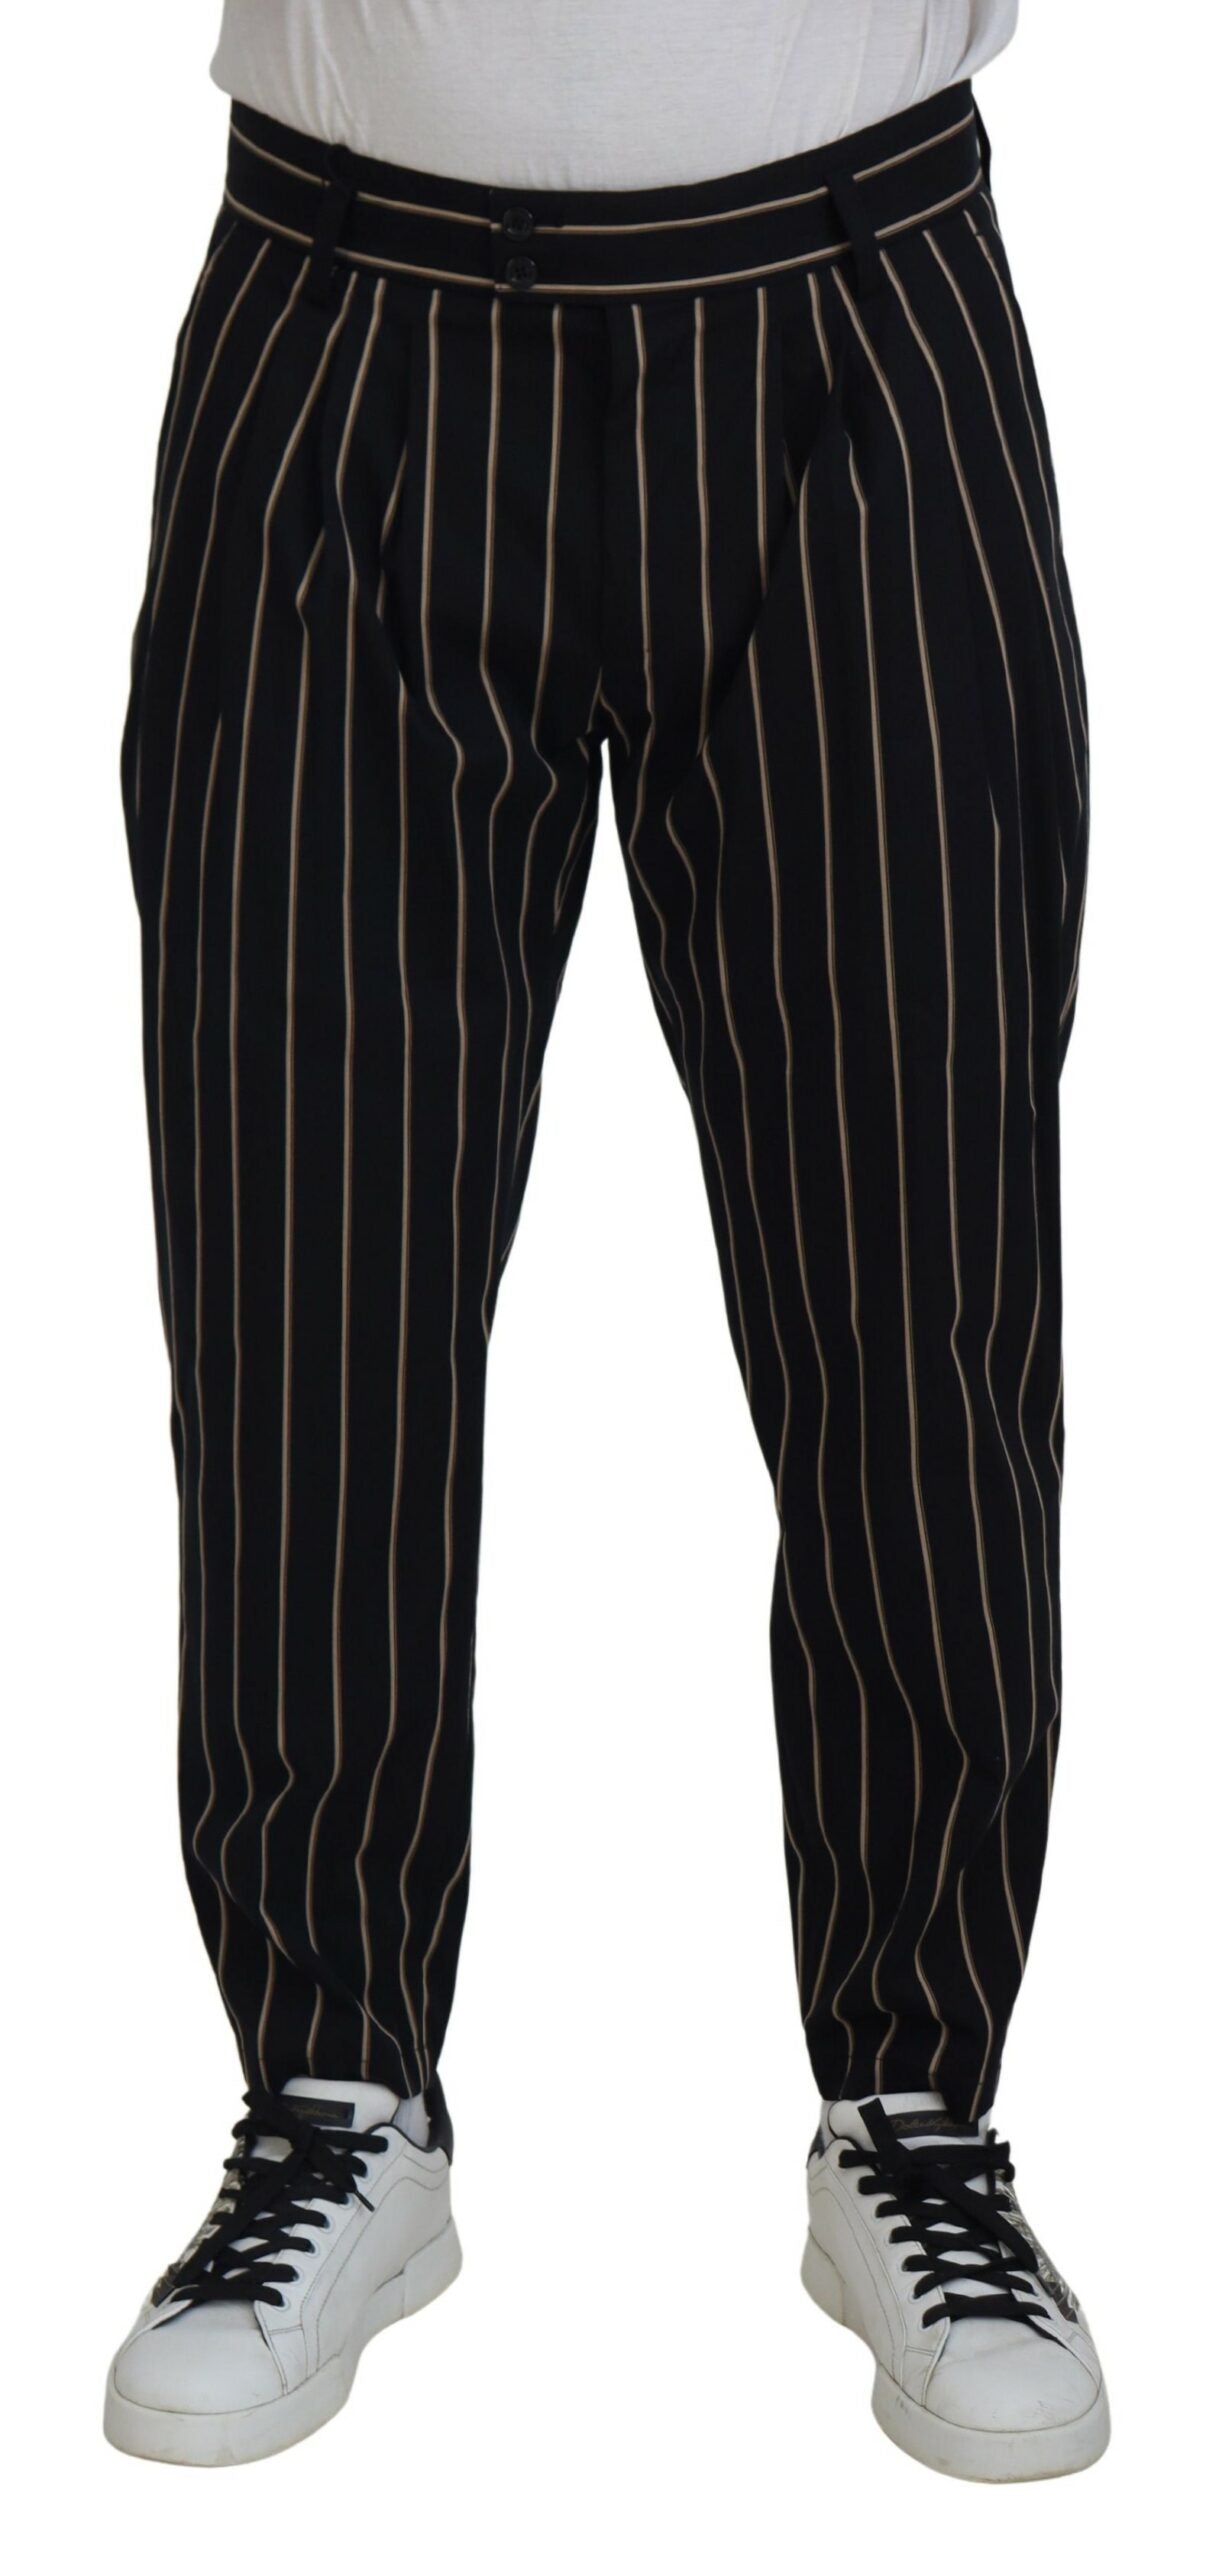 DOLCE & GABBANA Dolce & Gabbana   Striped Cotton Stretch Men's Pants